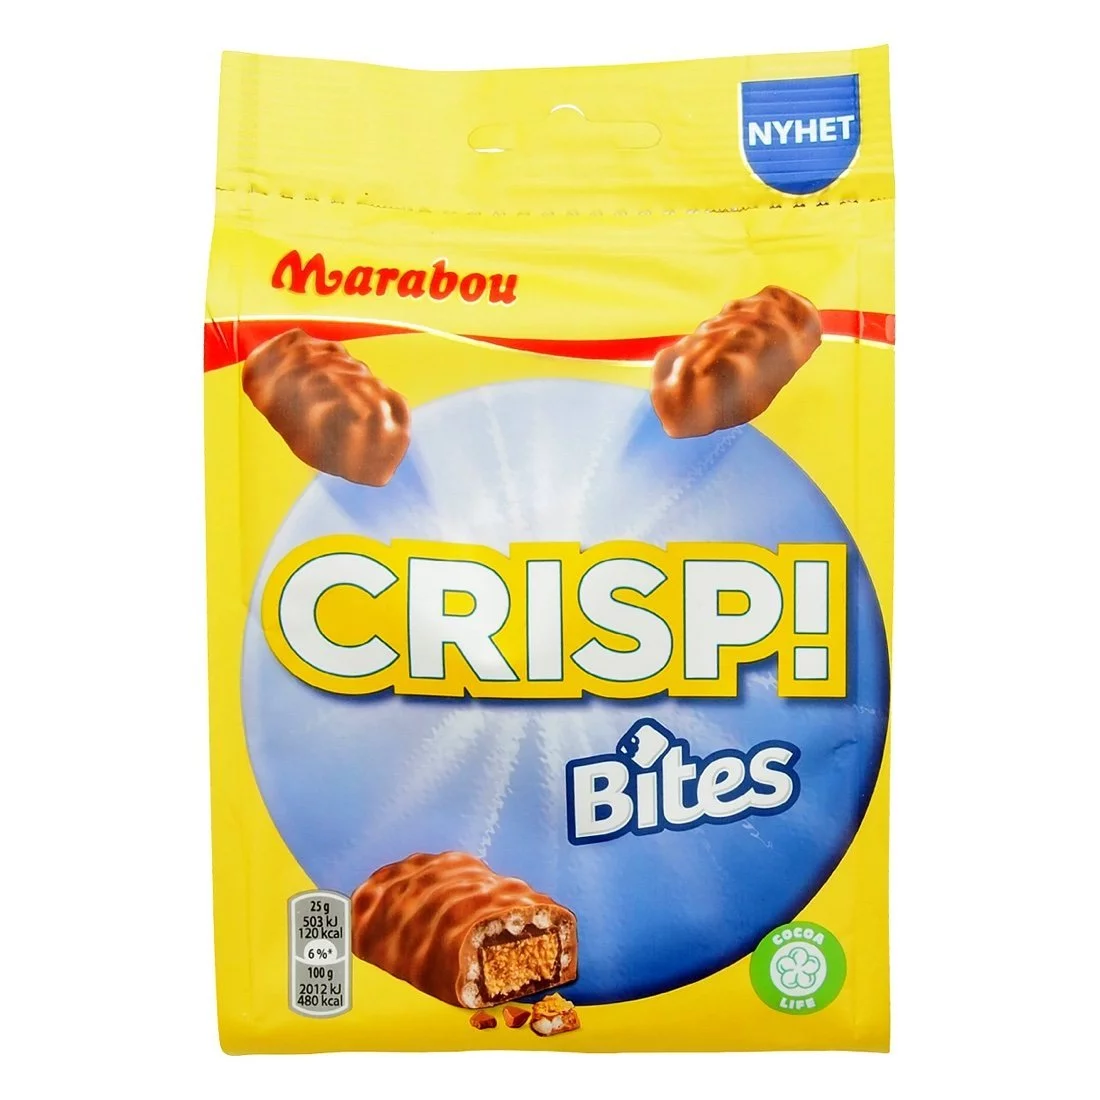 Marabou CRISP! Bites (140g) 1